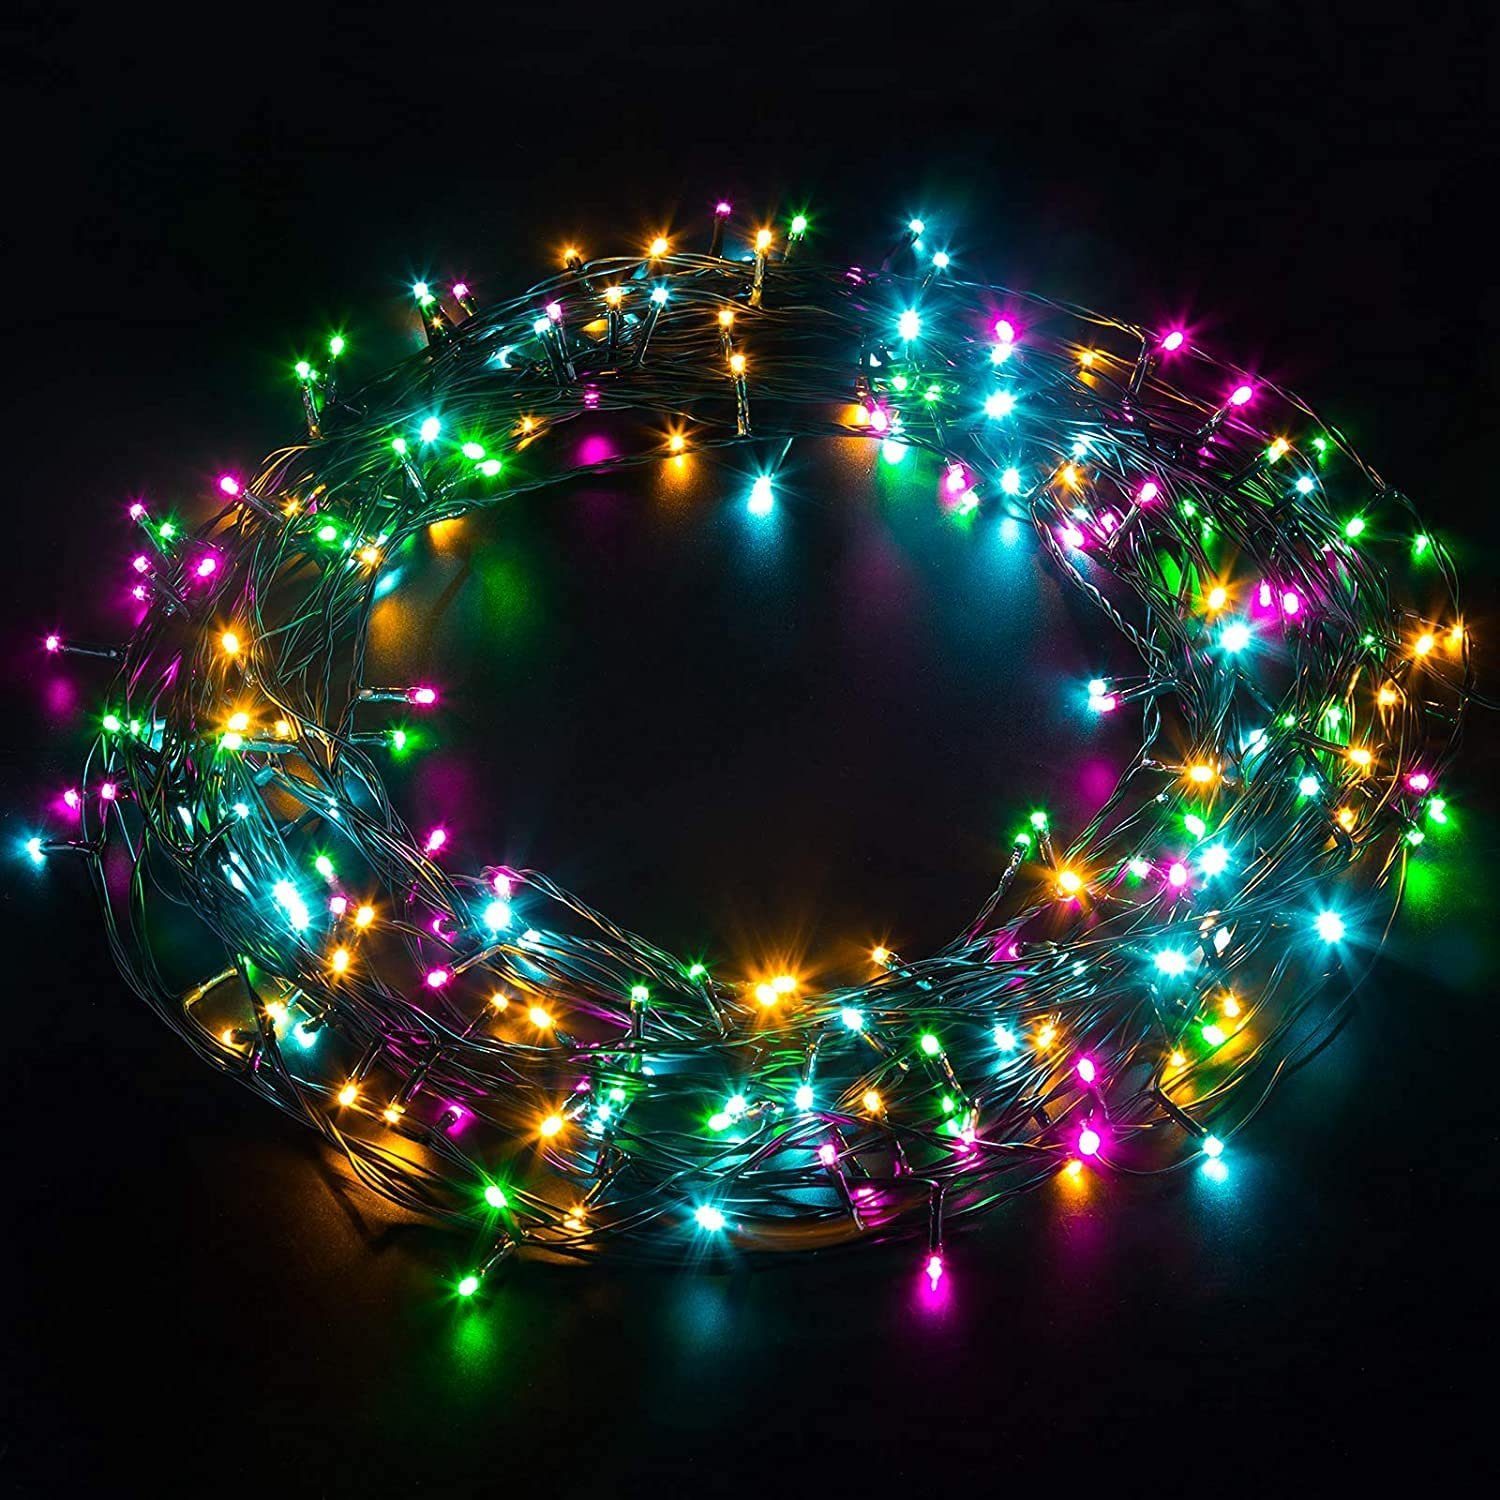 Bunt 500 LED Lichterkette Weihnachtsbeleuchtung 8 Modi Leuchte Party Garten IP44 